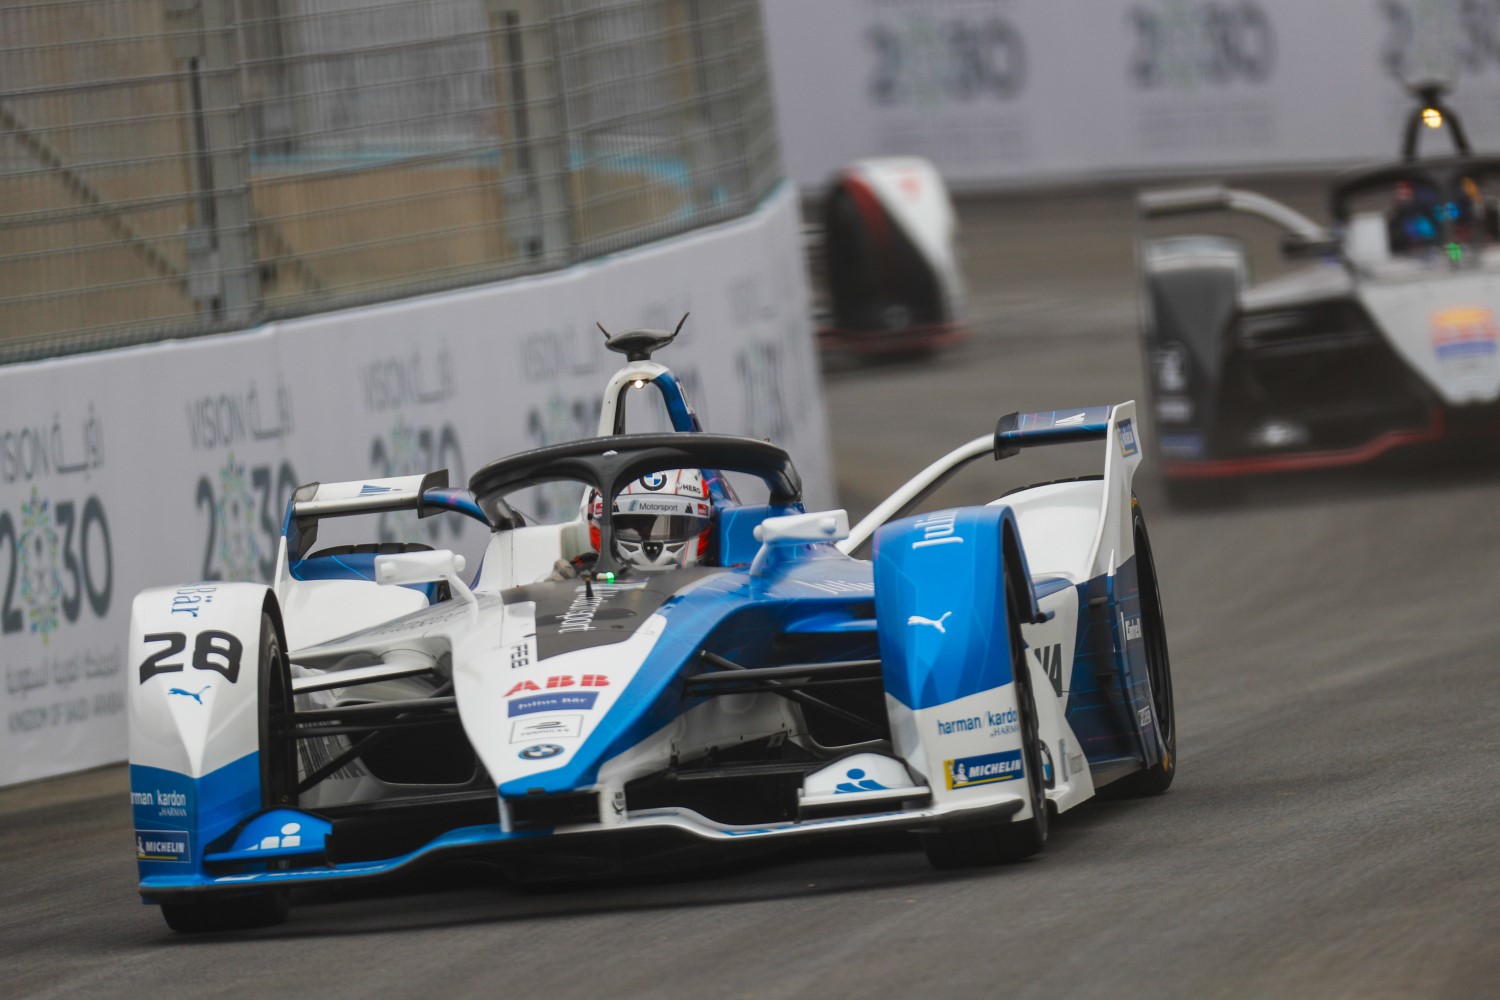 Fans can now race live online in Formula E races